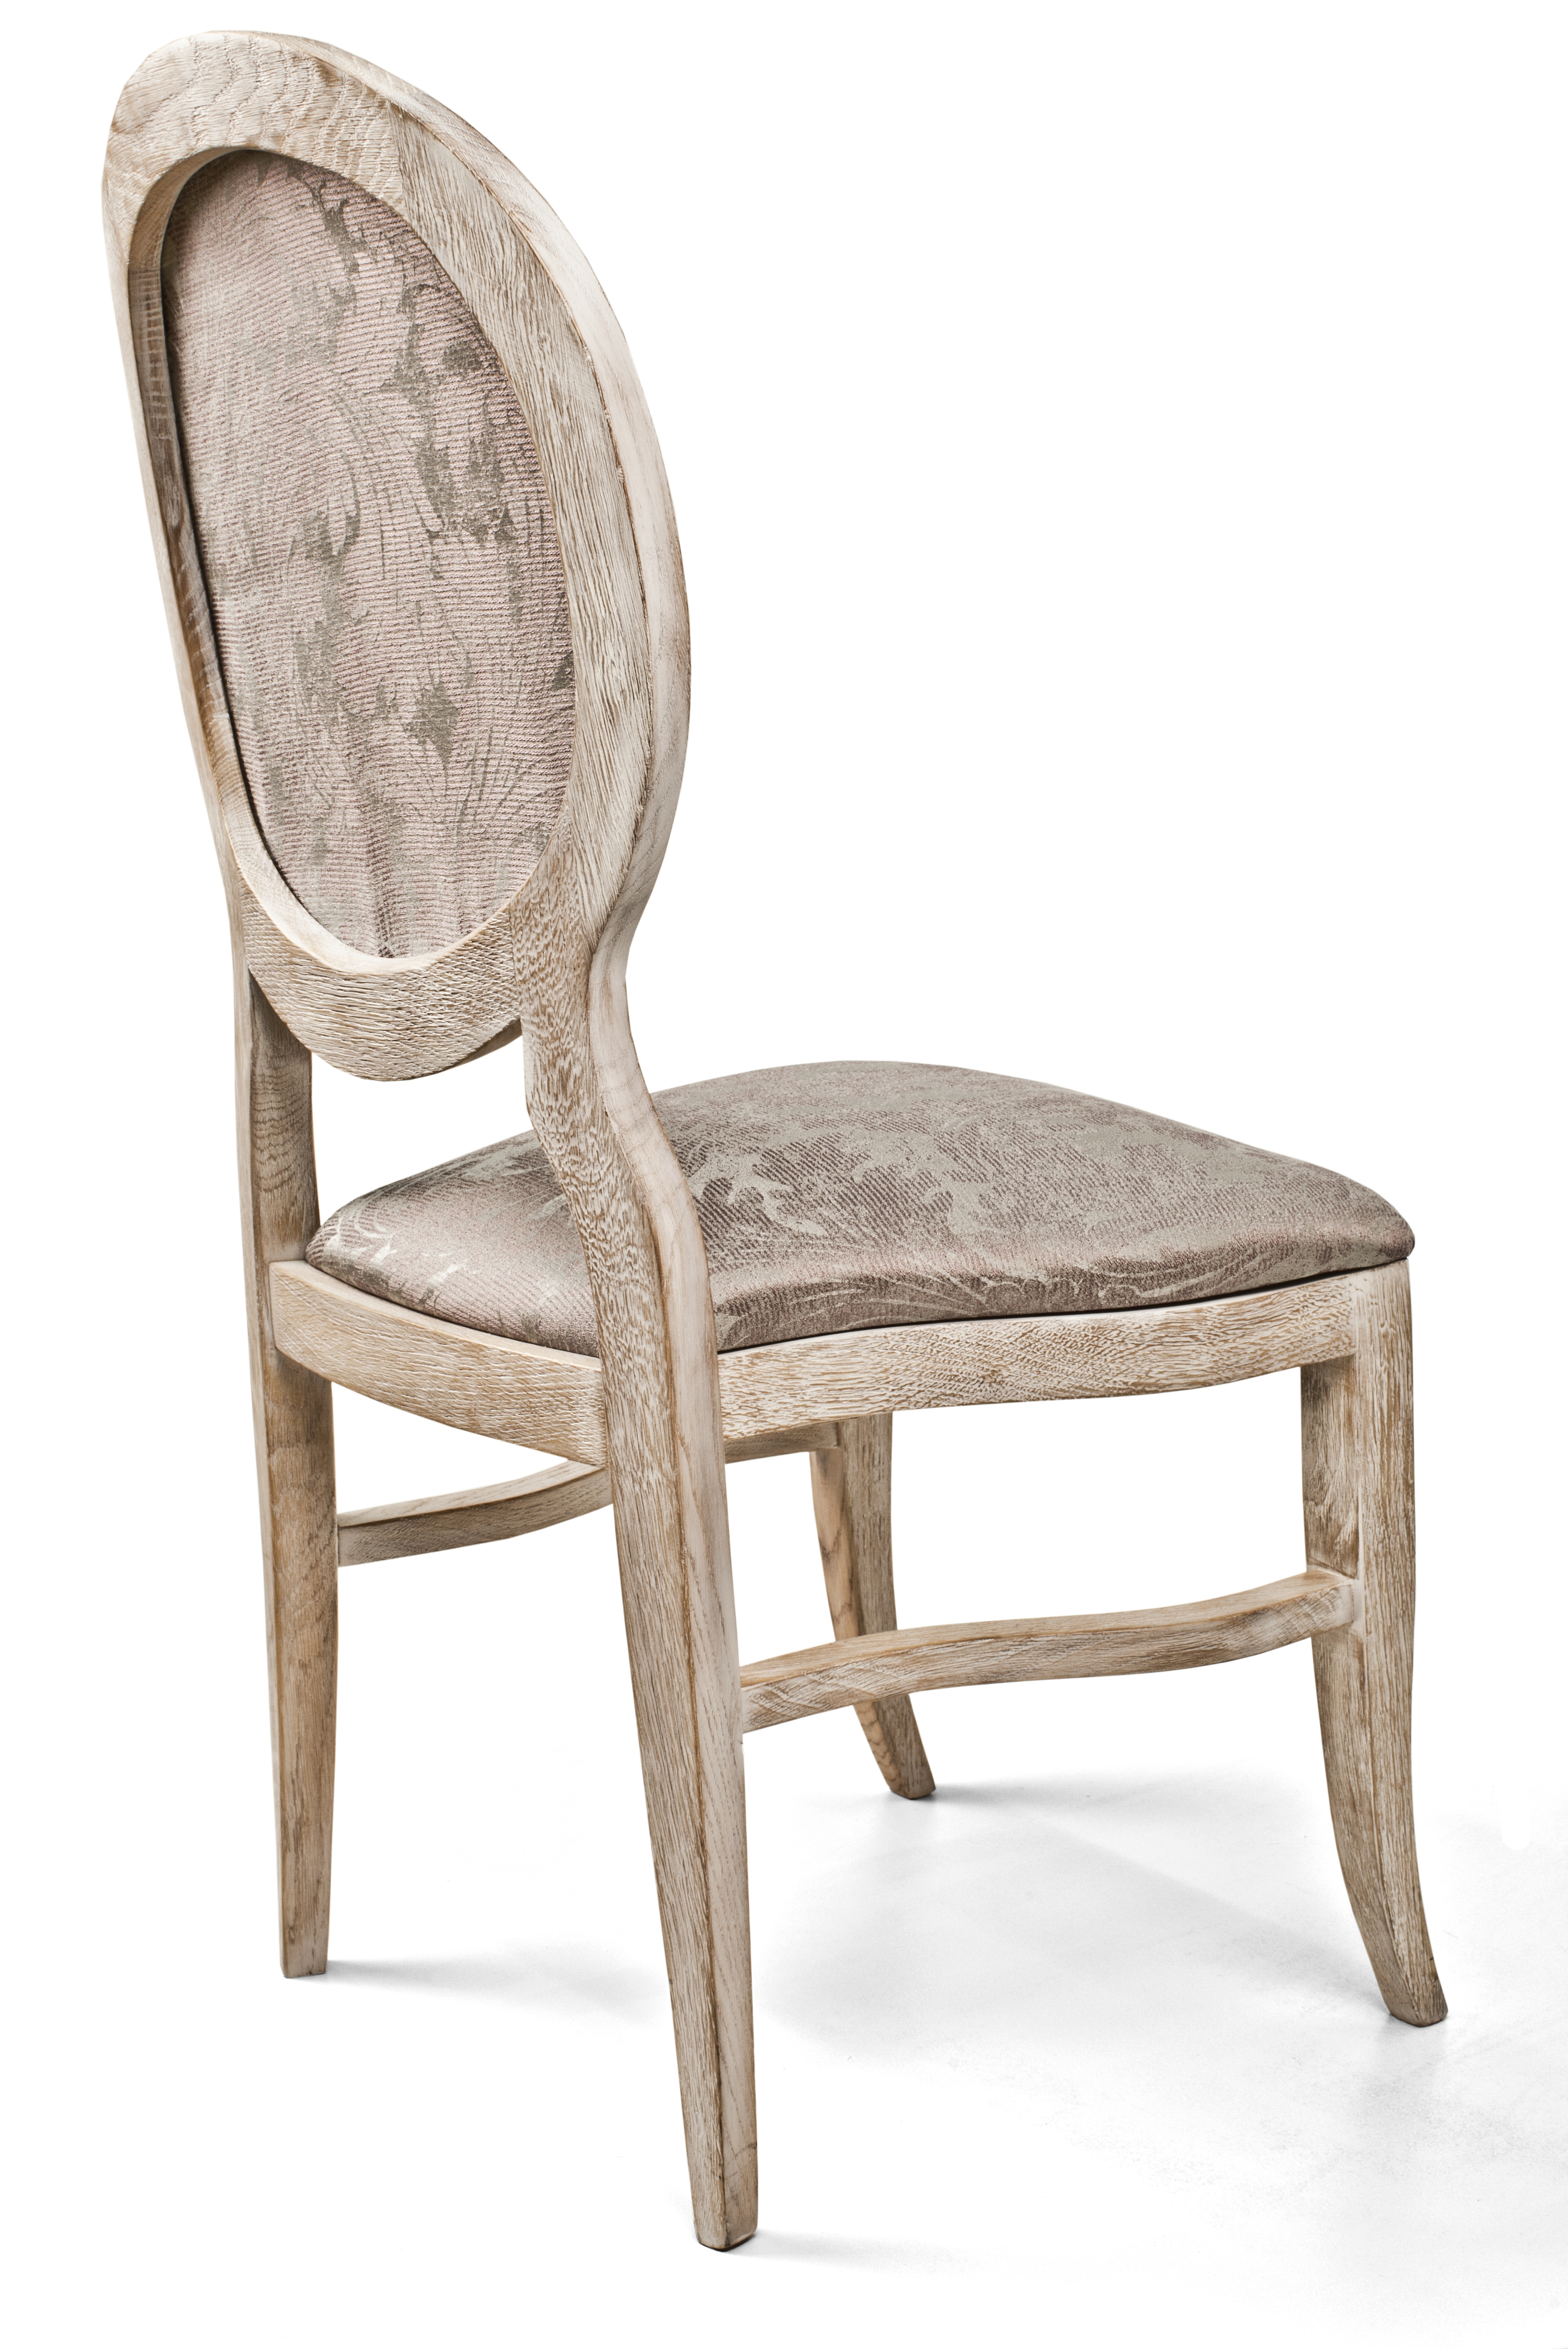 деревянный стул с круглой спинкой